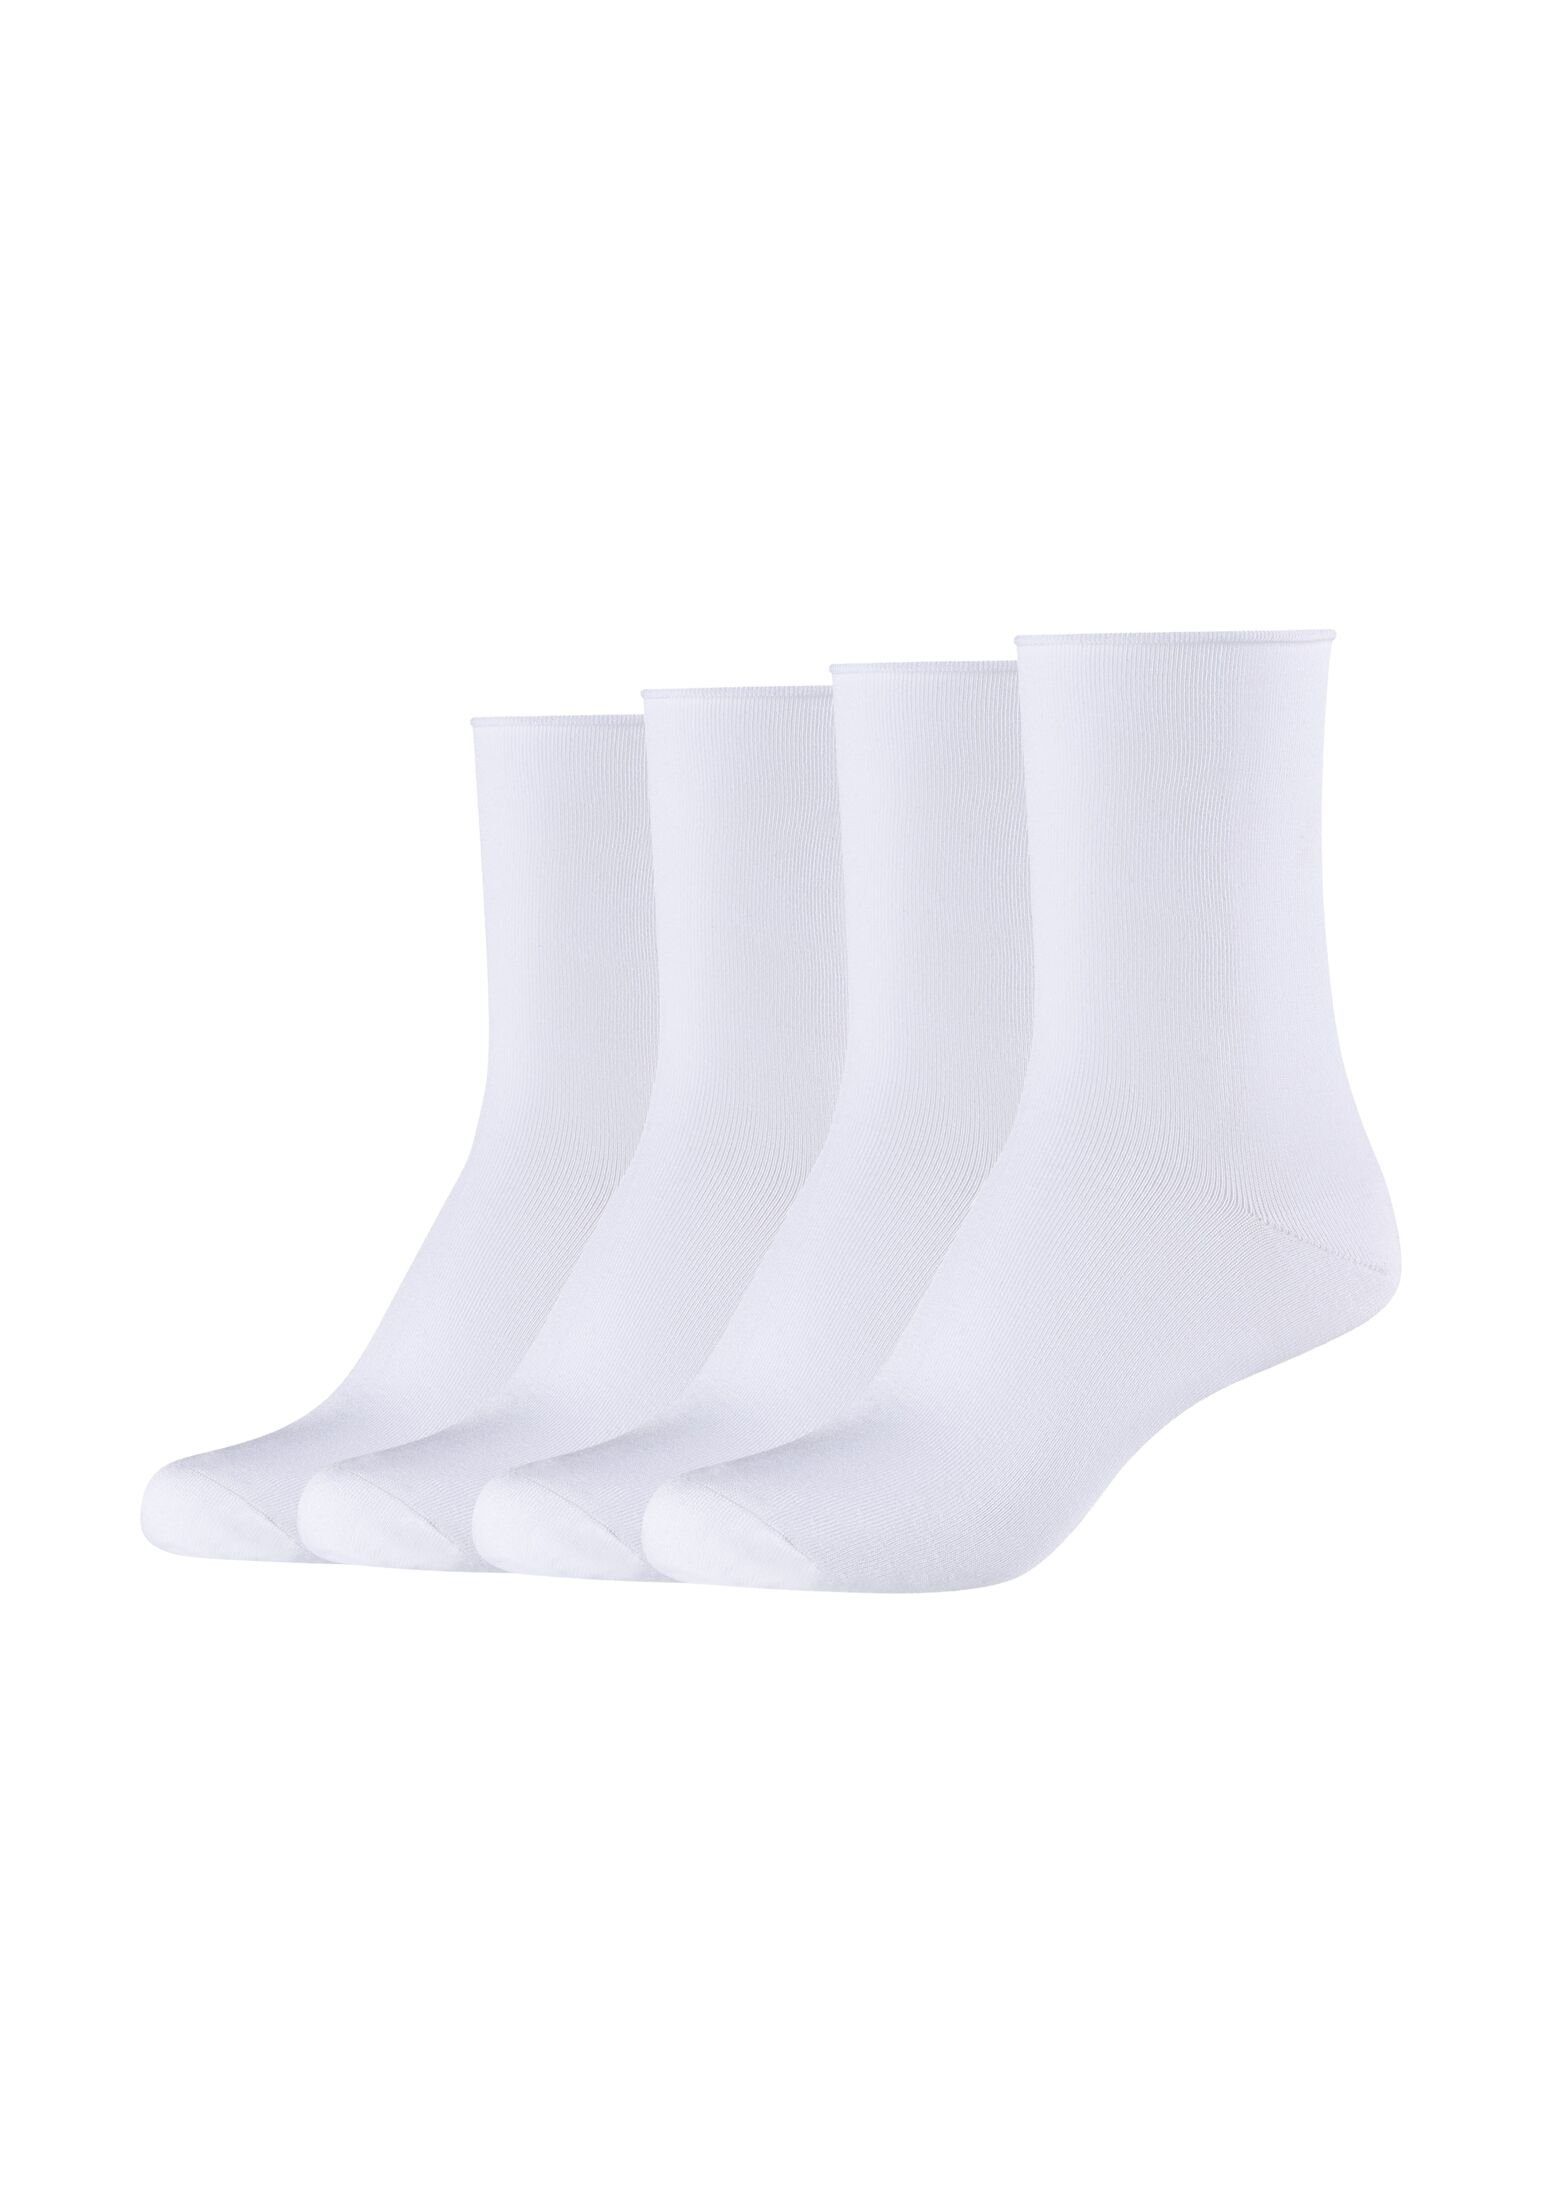 4er s.Oliver Socken Pack white Socken